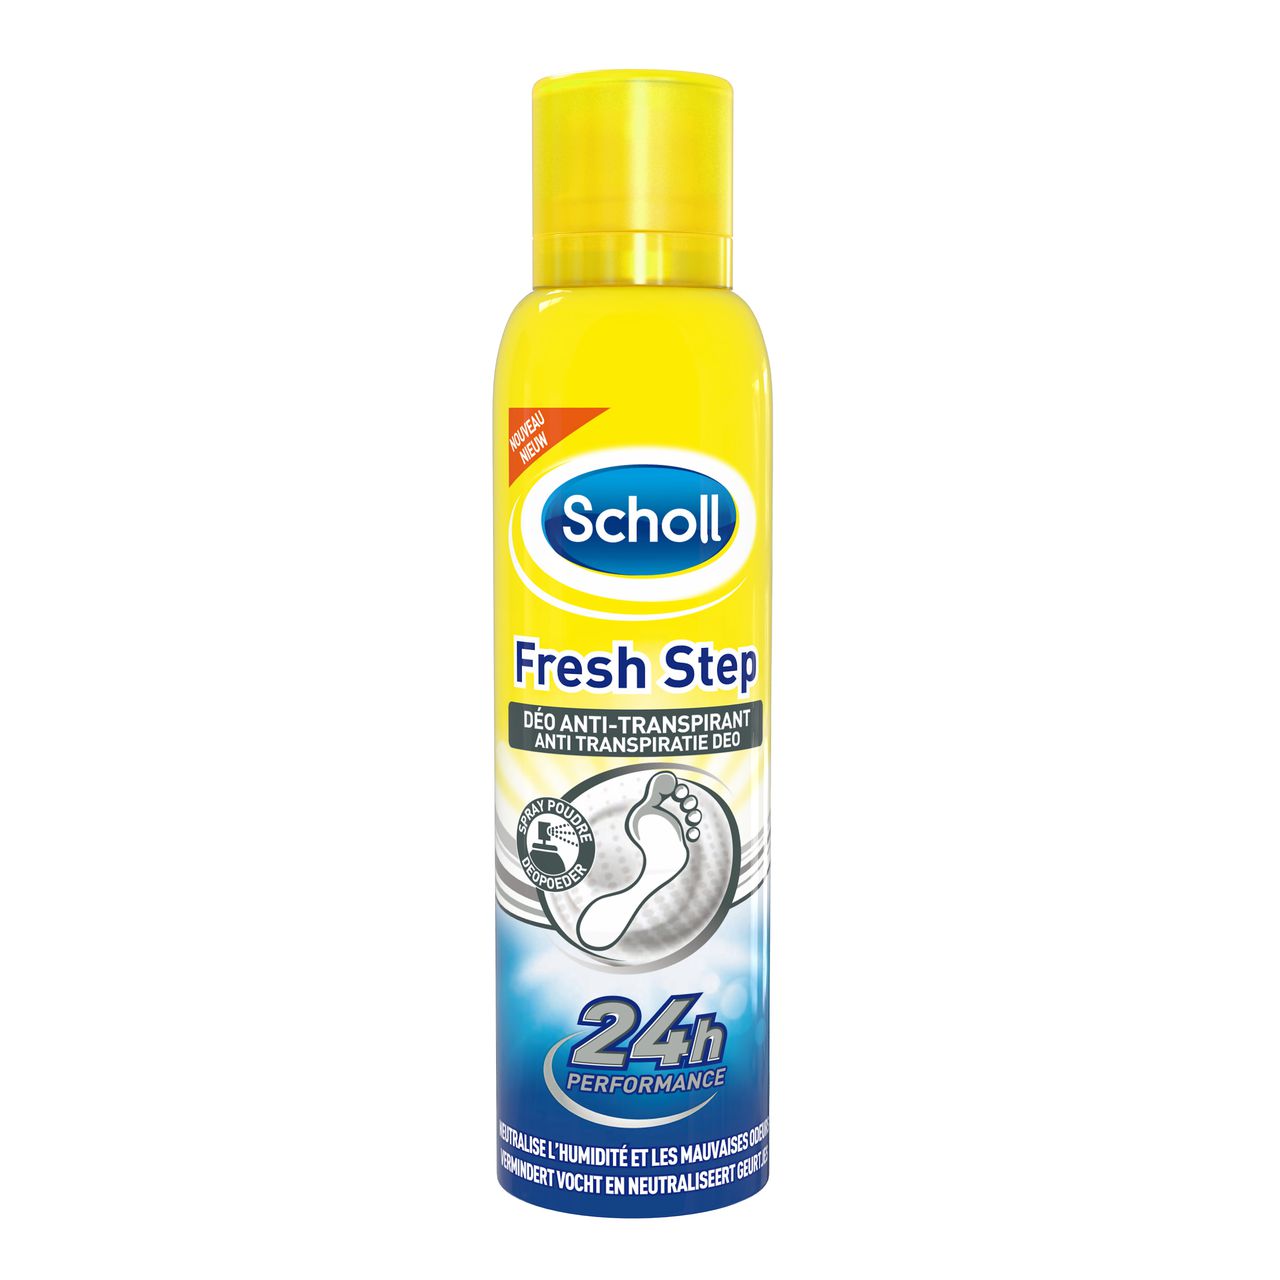 Hallo halfrond Geaccepteerd Fresh Step Anti-transpiratie Deodorant - Scholl